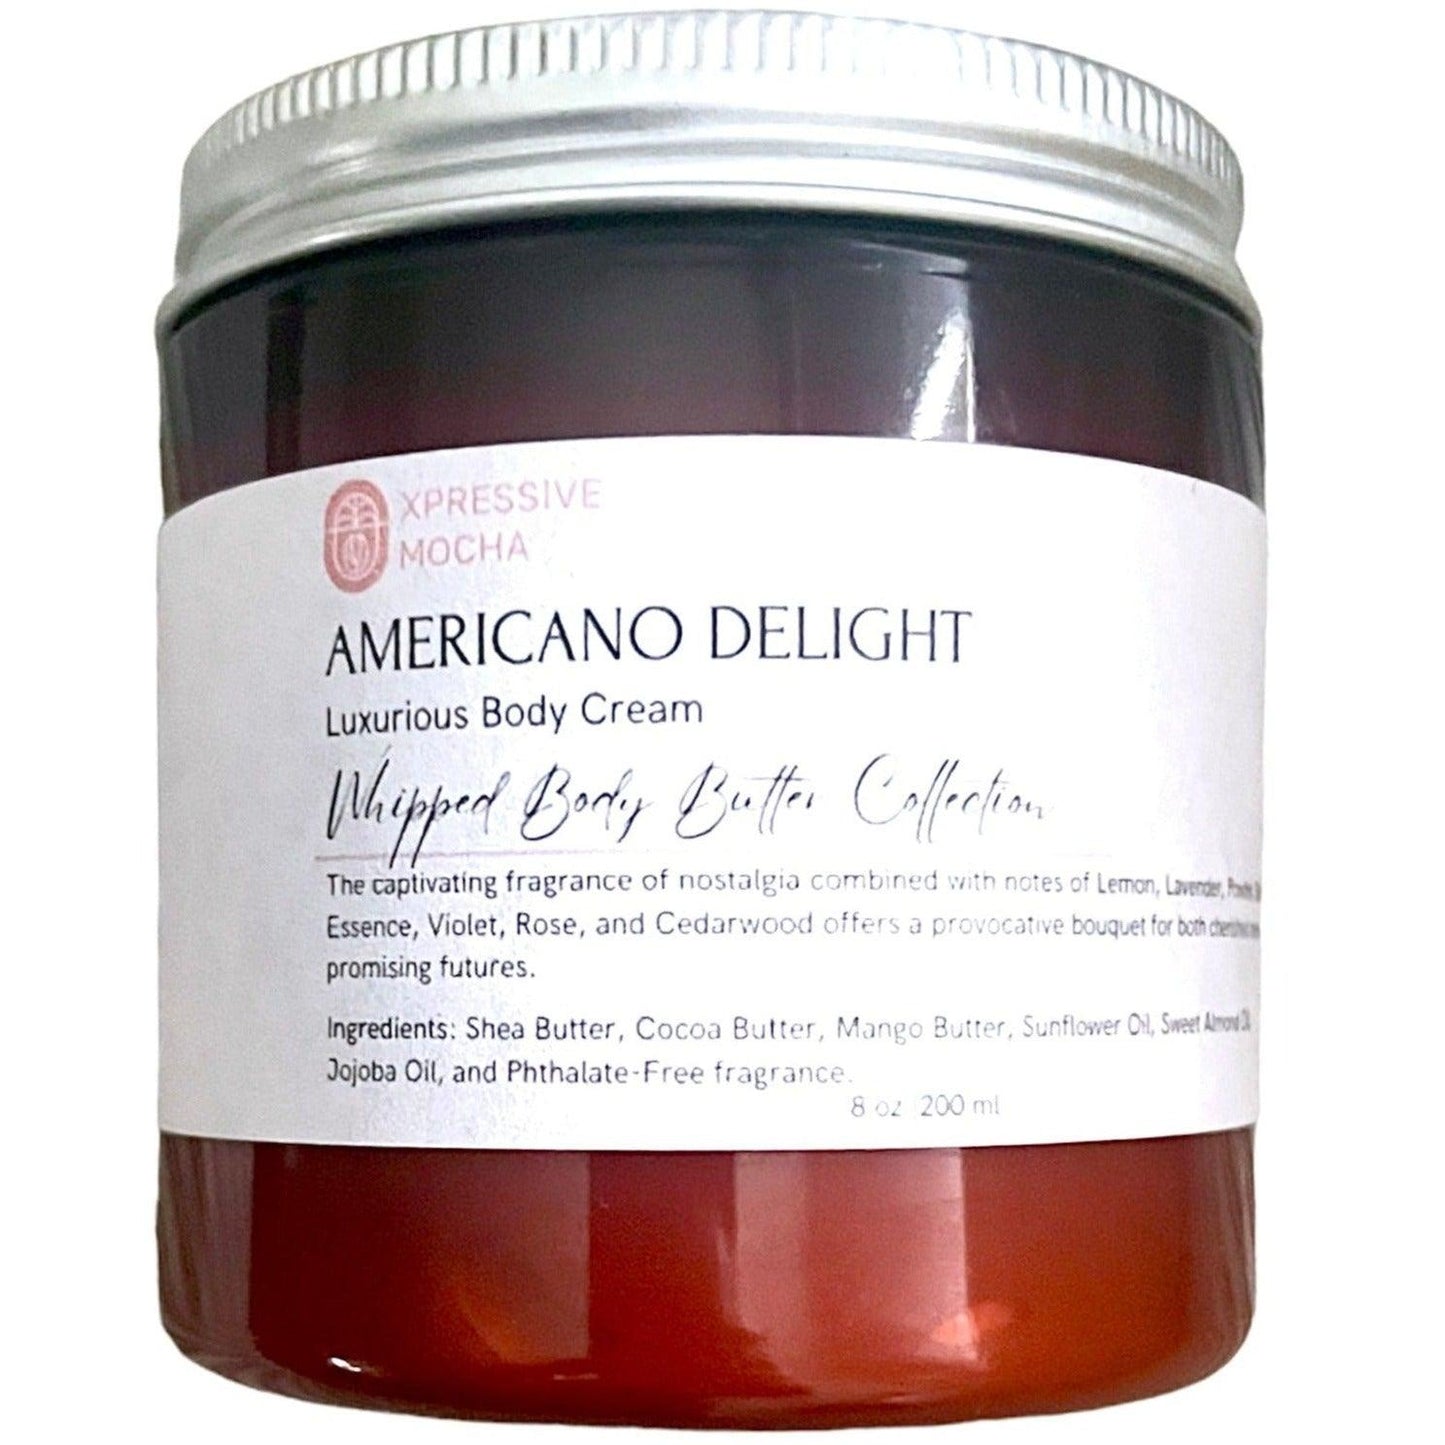 Americano Delight - Xpressive Mocha Body Butter Café